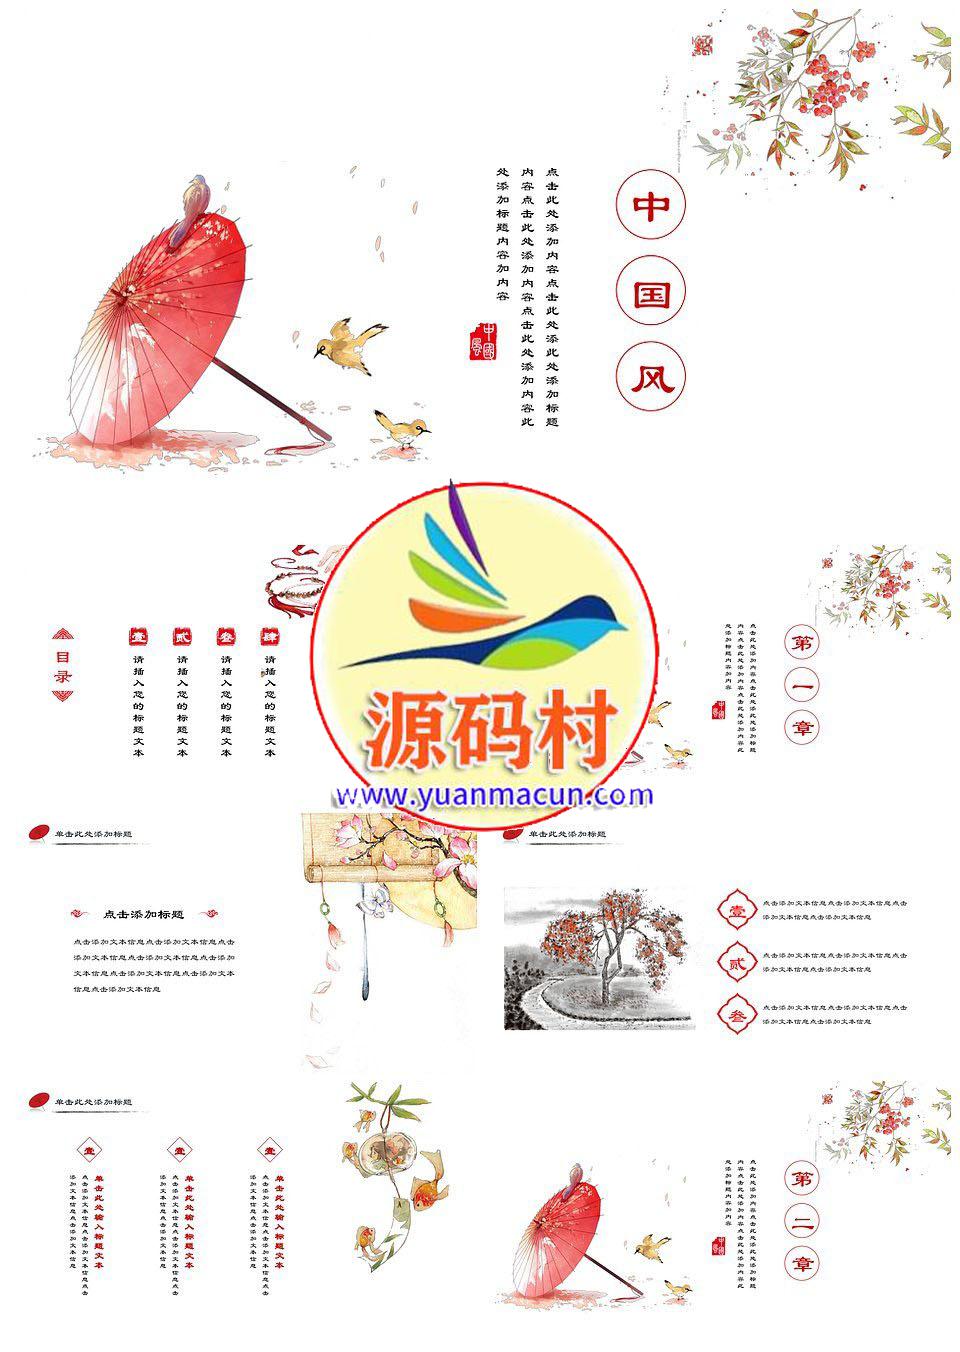 古典唯美中国风工作汇报商业计划书通用PPT模板下载,1.jpg,第1张